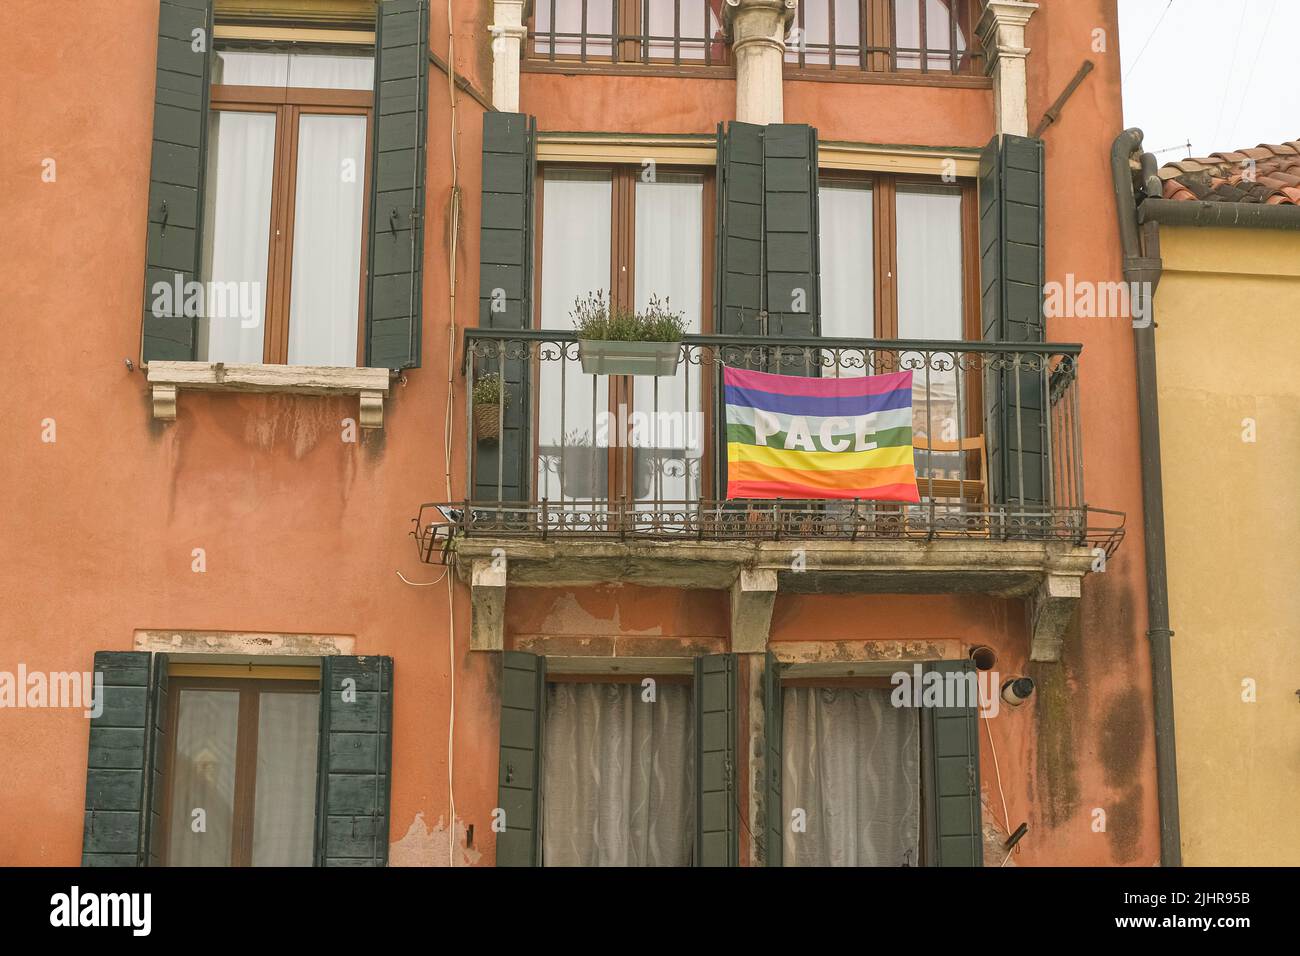 Bandiera di pace arcobaleno esposta sulla facciata della casa di città per sostenere la guerra di arresto in Ucraina. Foto Stock